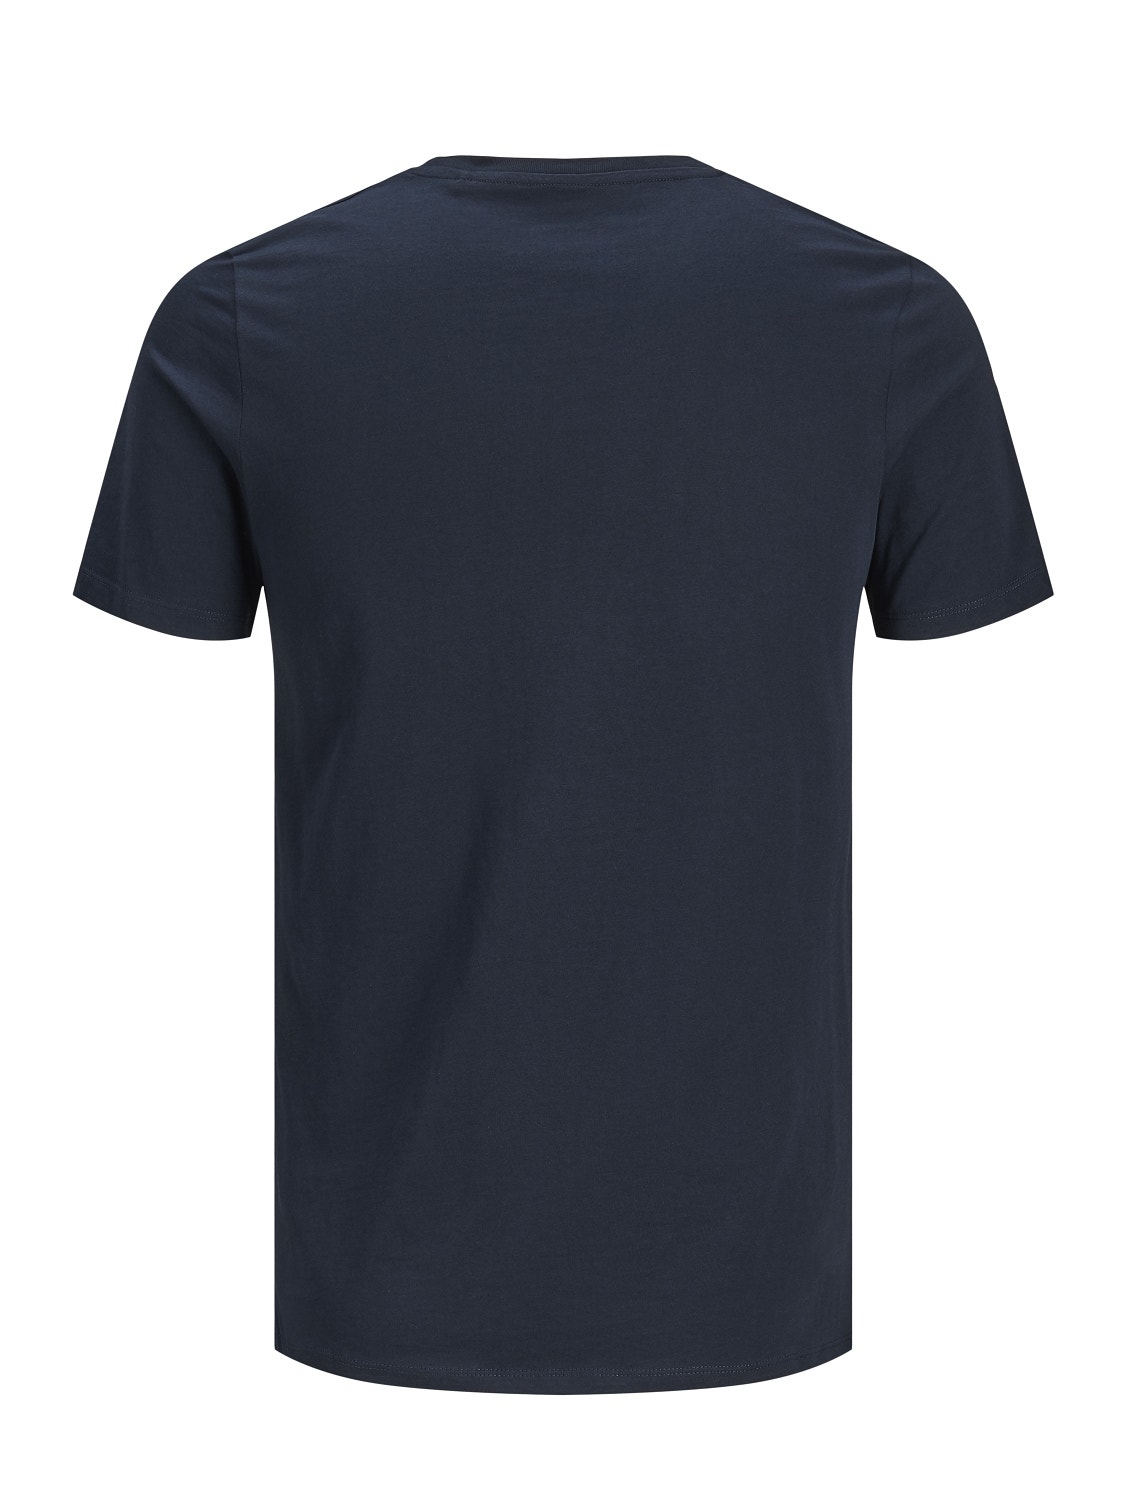 Jack & Jones T-shirt Logo Decote Redondo -Navy Blazer - 12151955